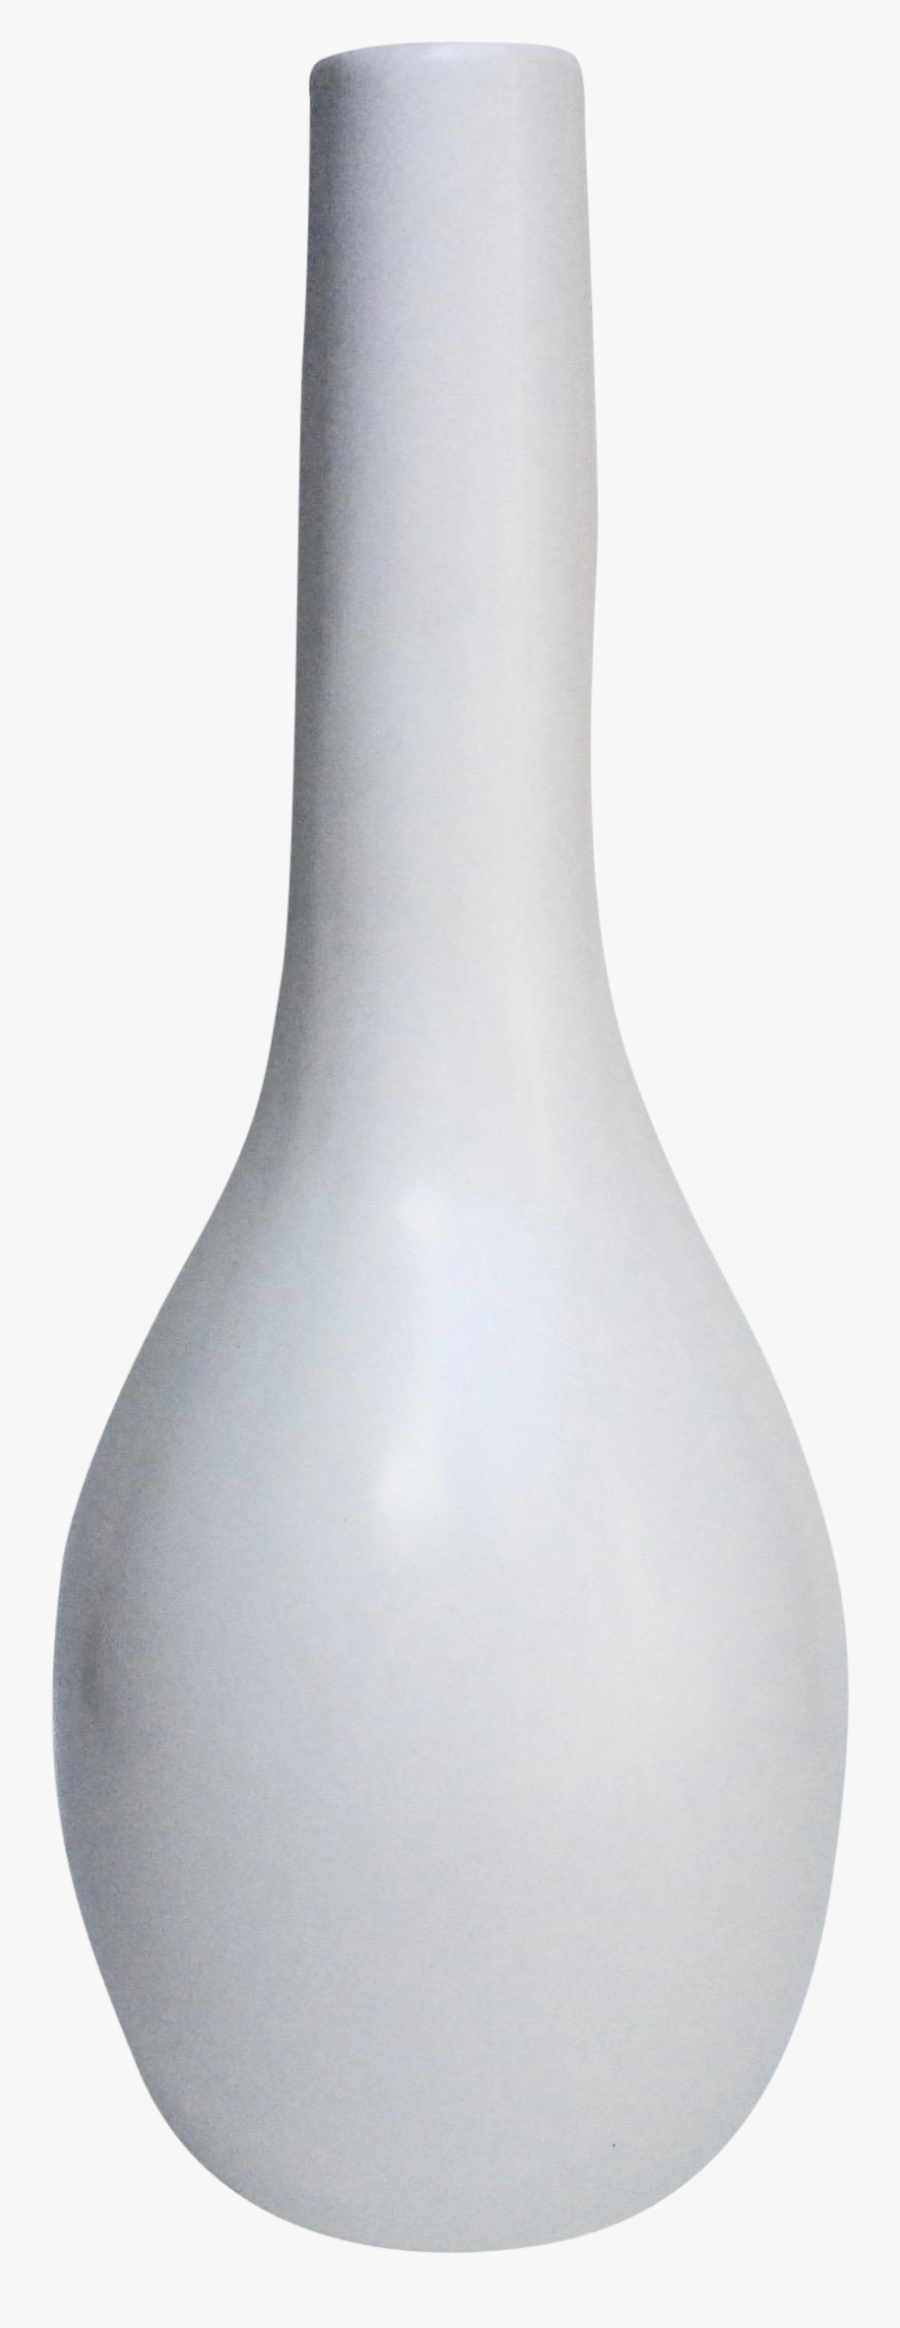 Vase Png - Vase, Transparent Clipart